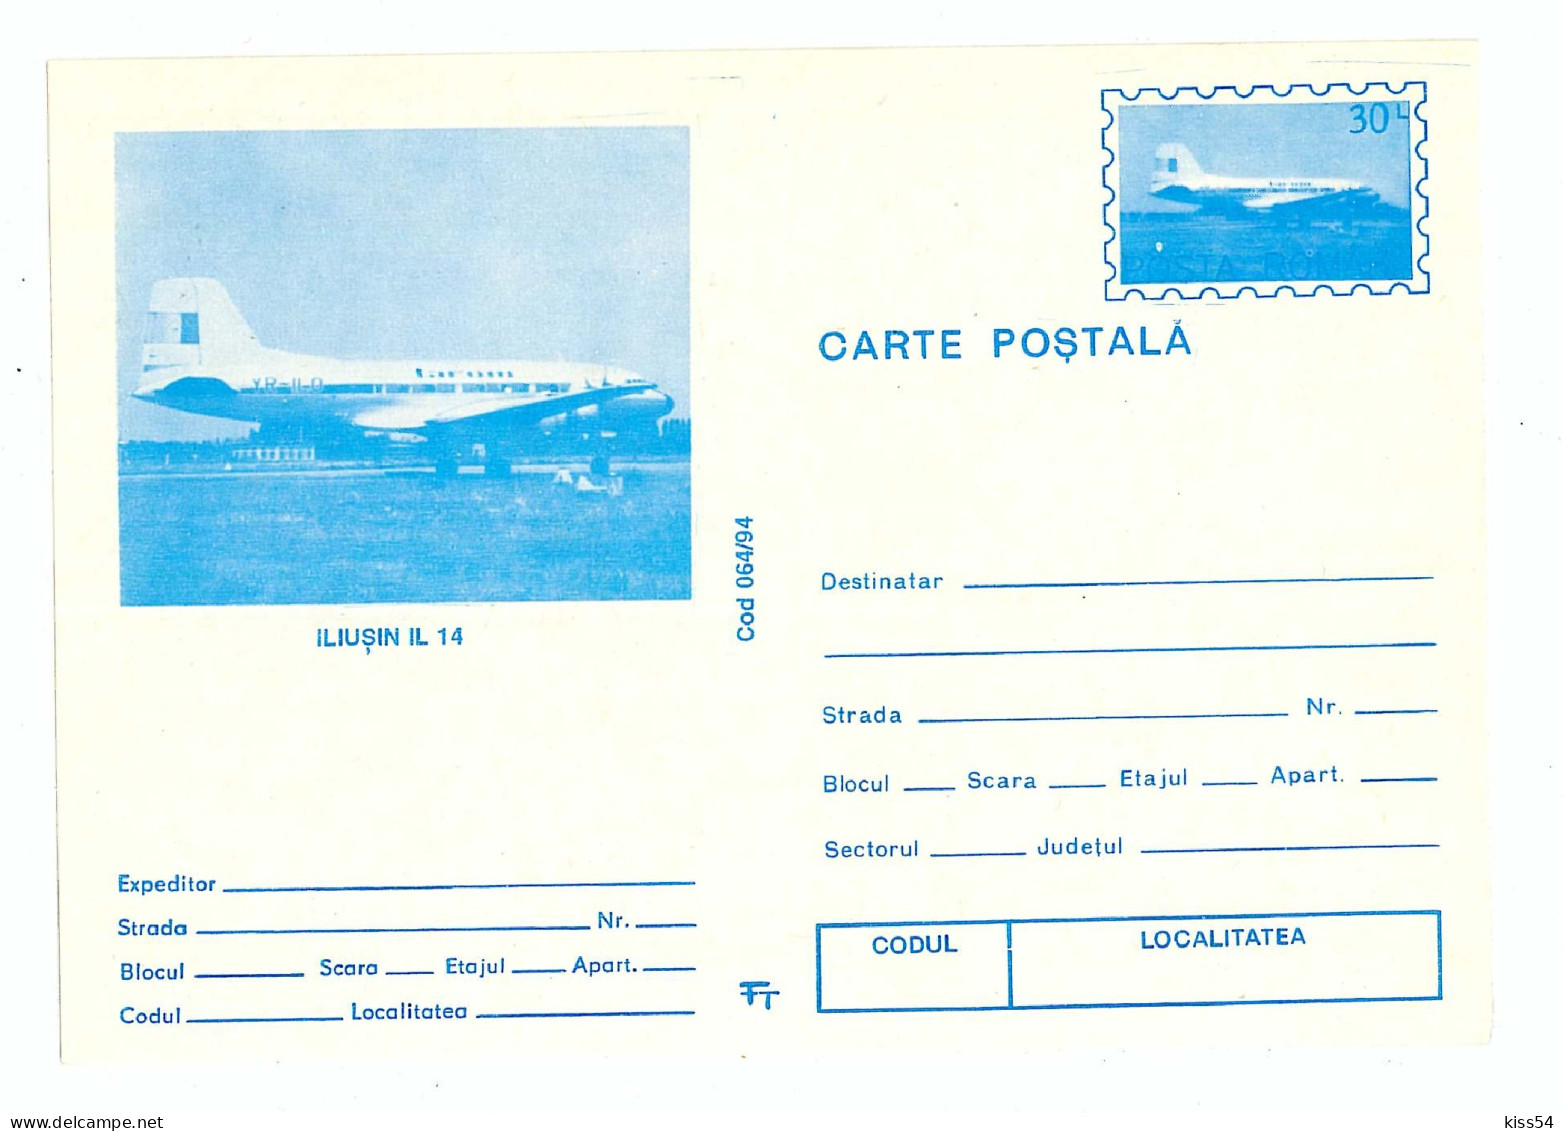 IP 94 - 64b AIRPLANE - ILIUSIN IL 14, Romania - Stationery - Unused - 1994 - Postal Stationery